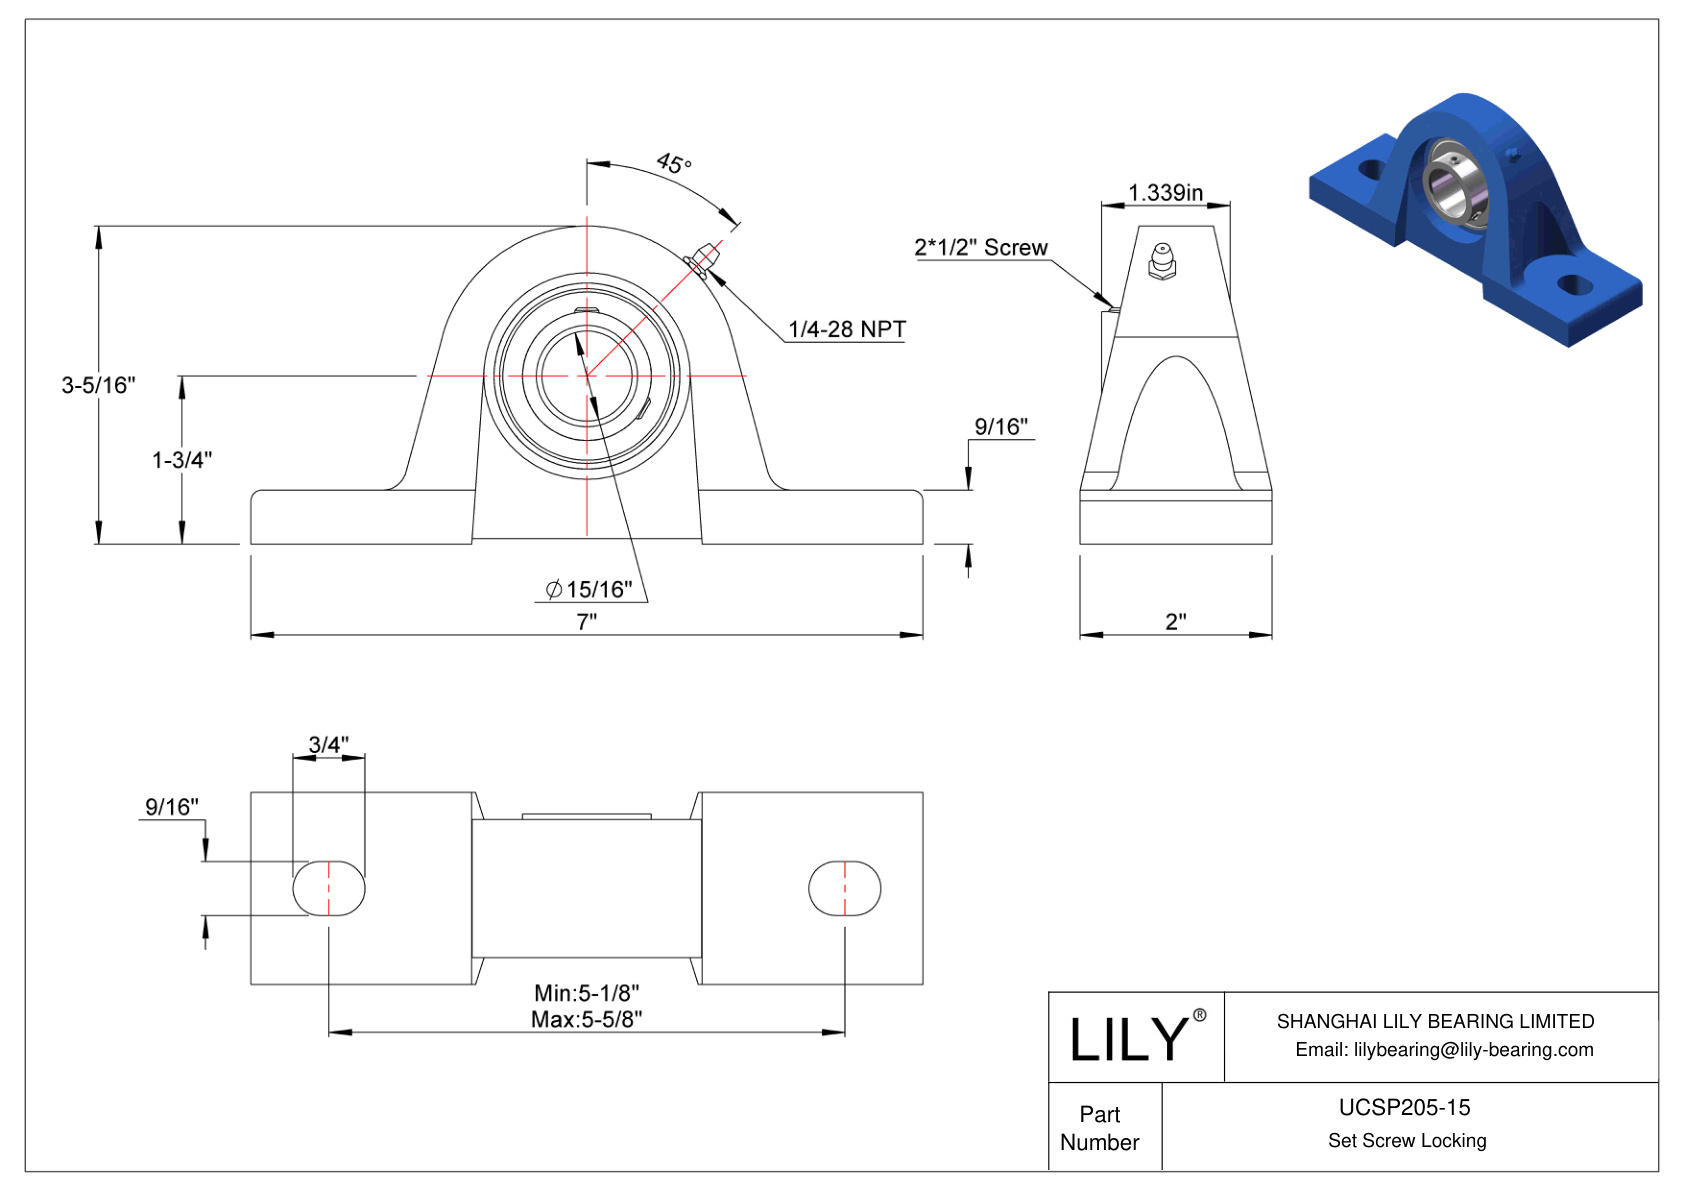 UCSP205-15 Pillow Block Bearing Set Screw Locking cad drawing